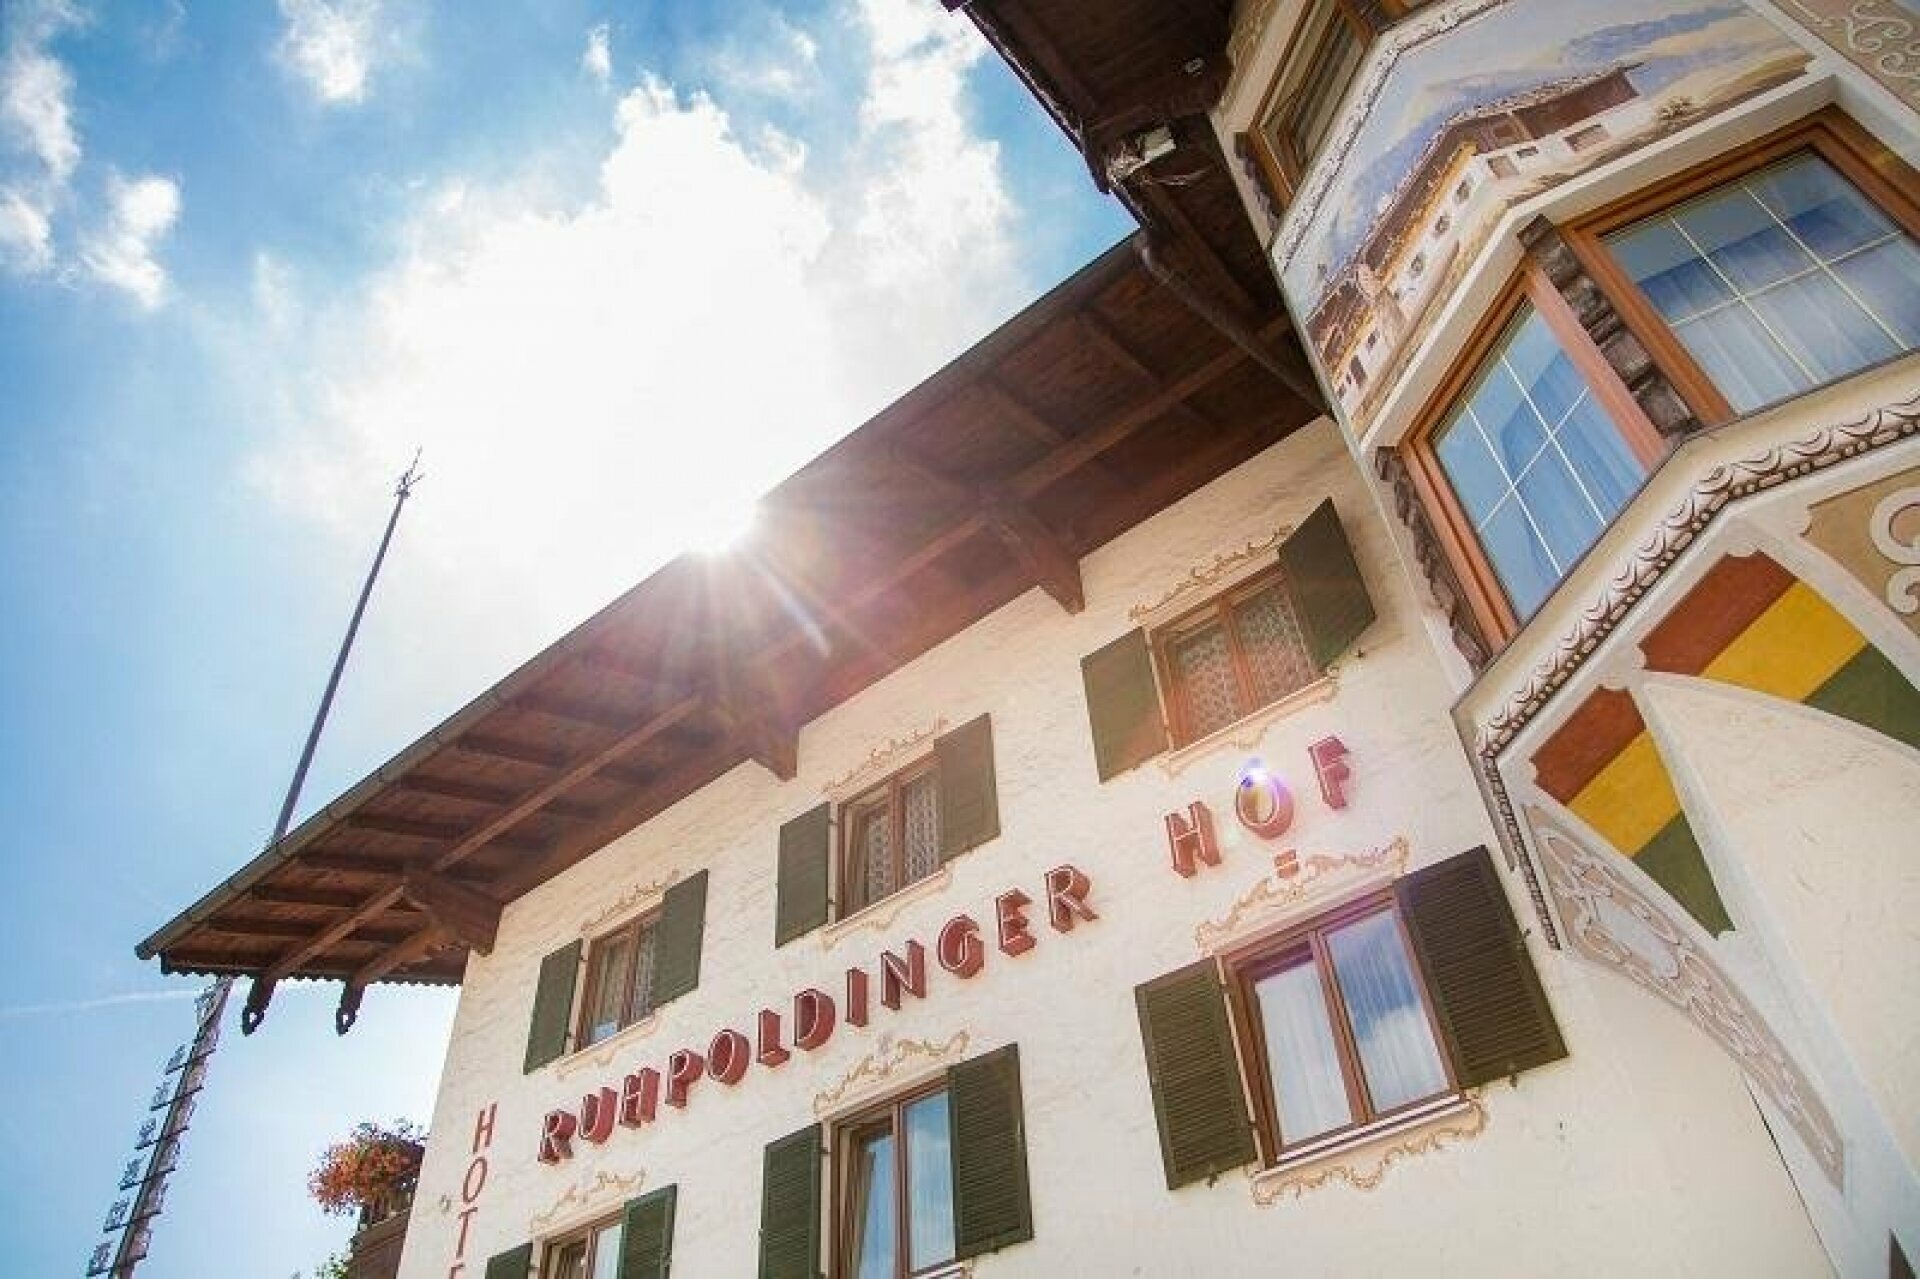 Rodelvergnügen im Fasching mit dem Chiemgau Coaster – Hotel Ruhpoldinger Hof